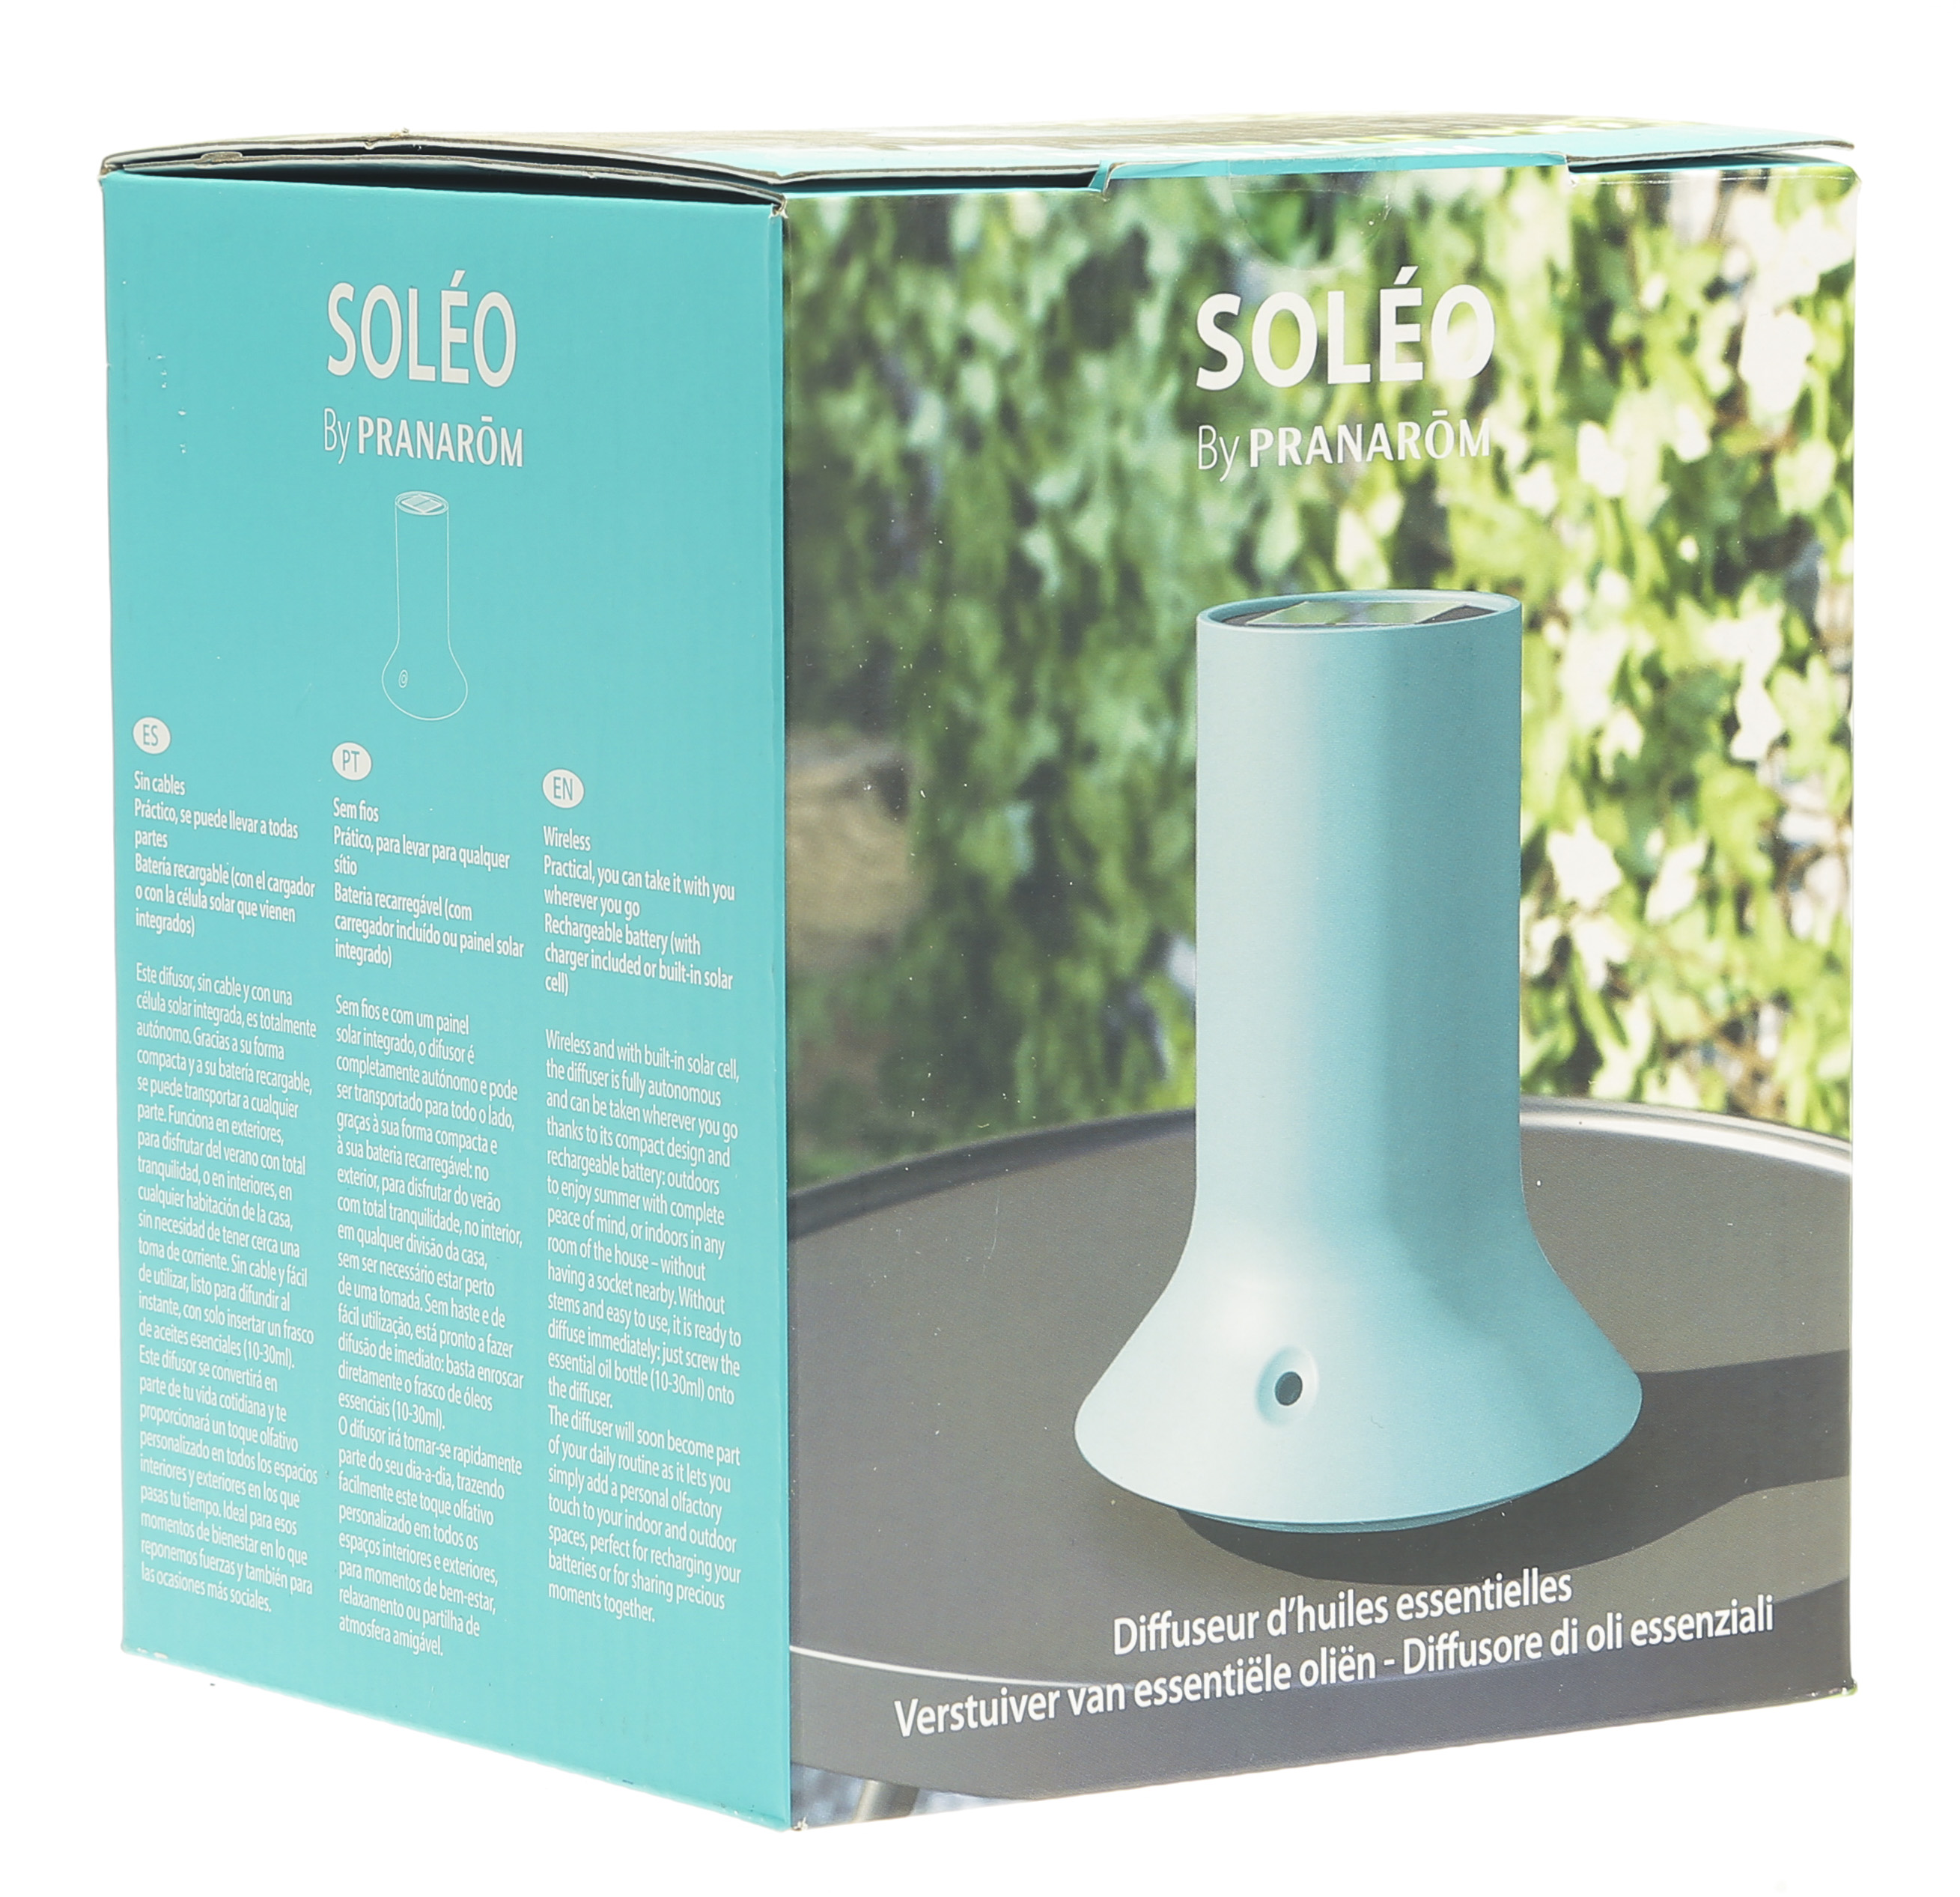 Diffuseur d'huiles essentielles Soleo - Solaire et sans fil